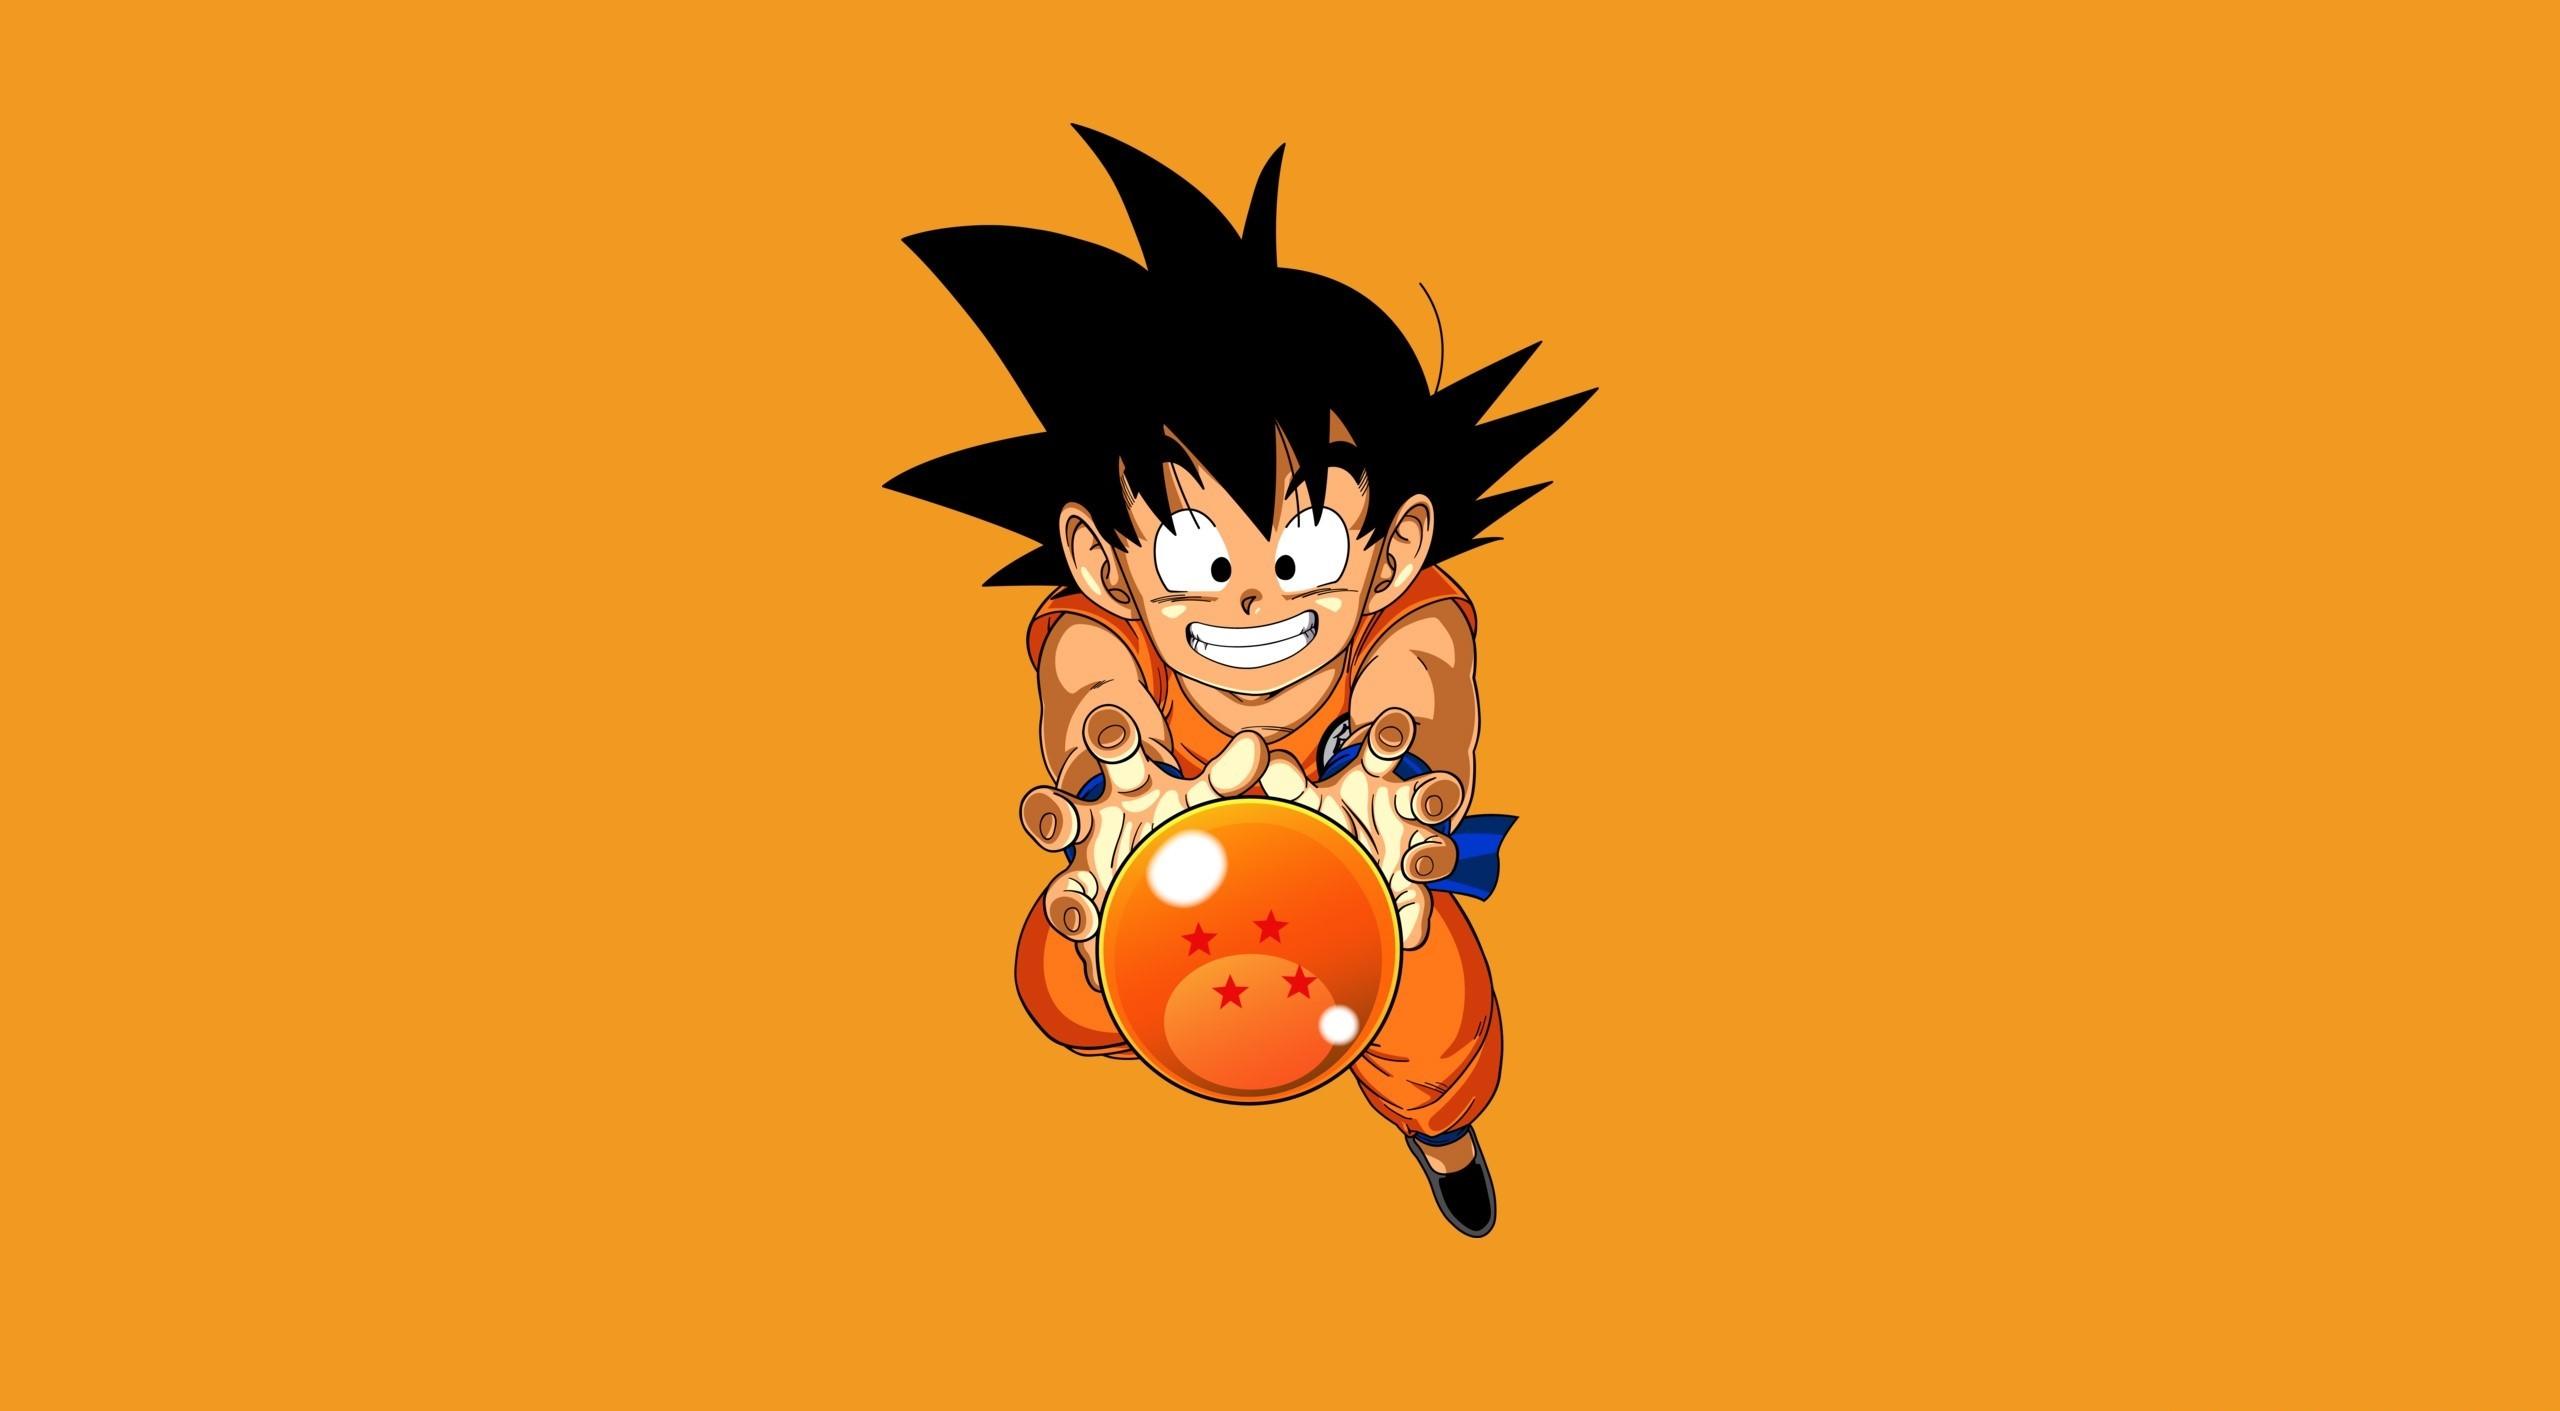 Kid Goku Wallpaper (the best image in 2018)